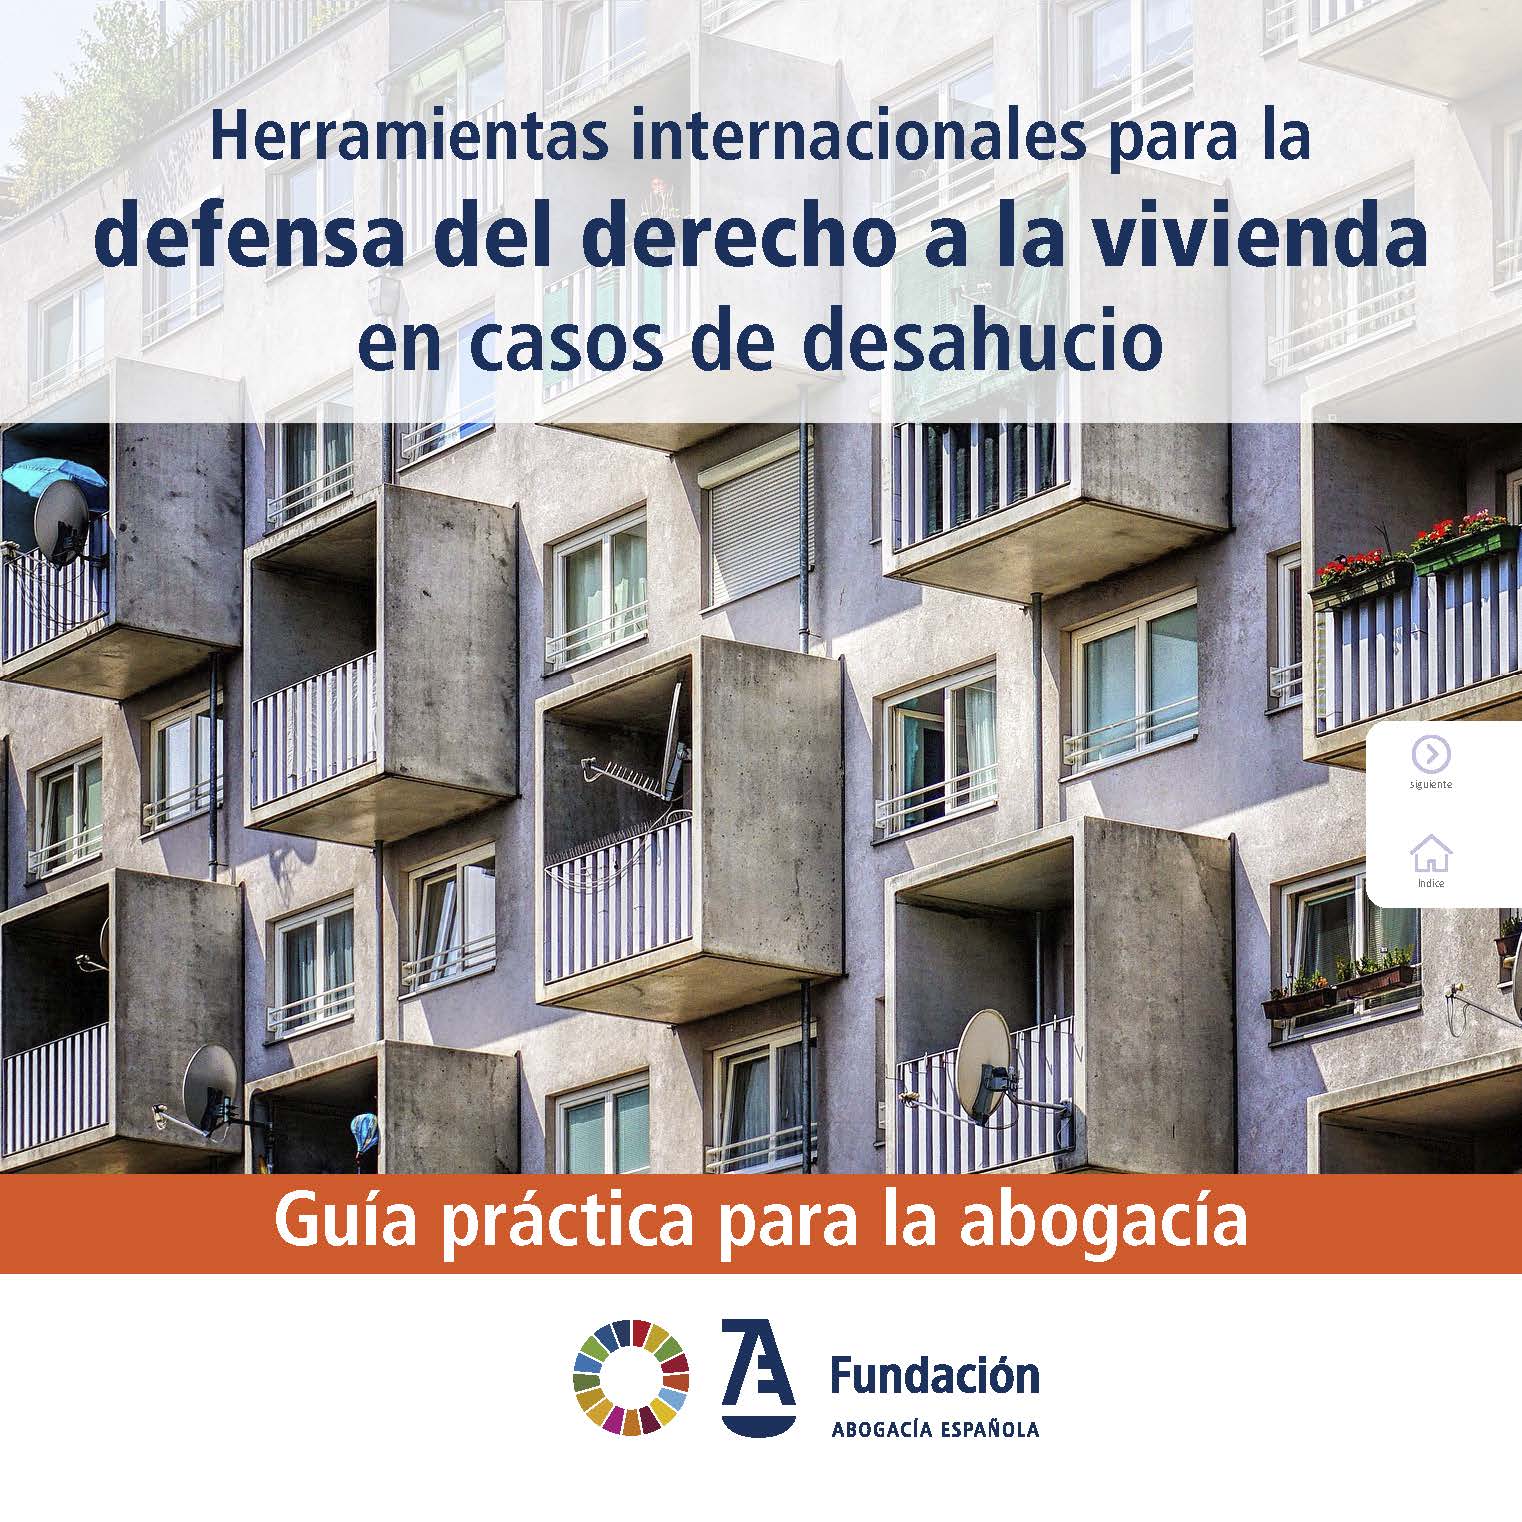 Una Guía para defender el derecho a la vivienda como un derecho humano